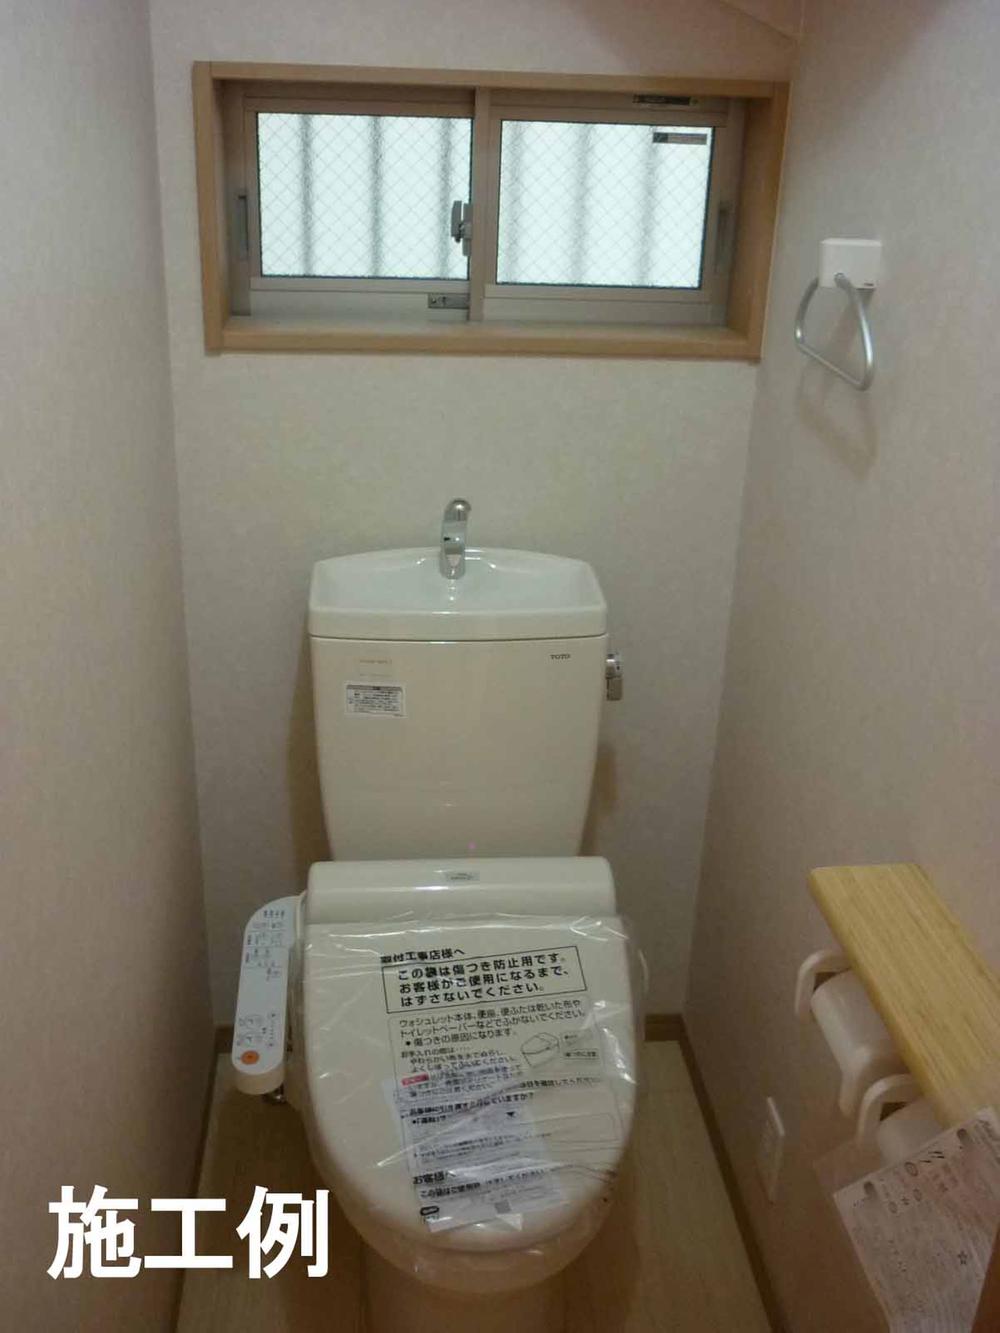 Toilet. Indoor (13 May 2013)